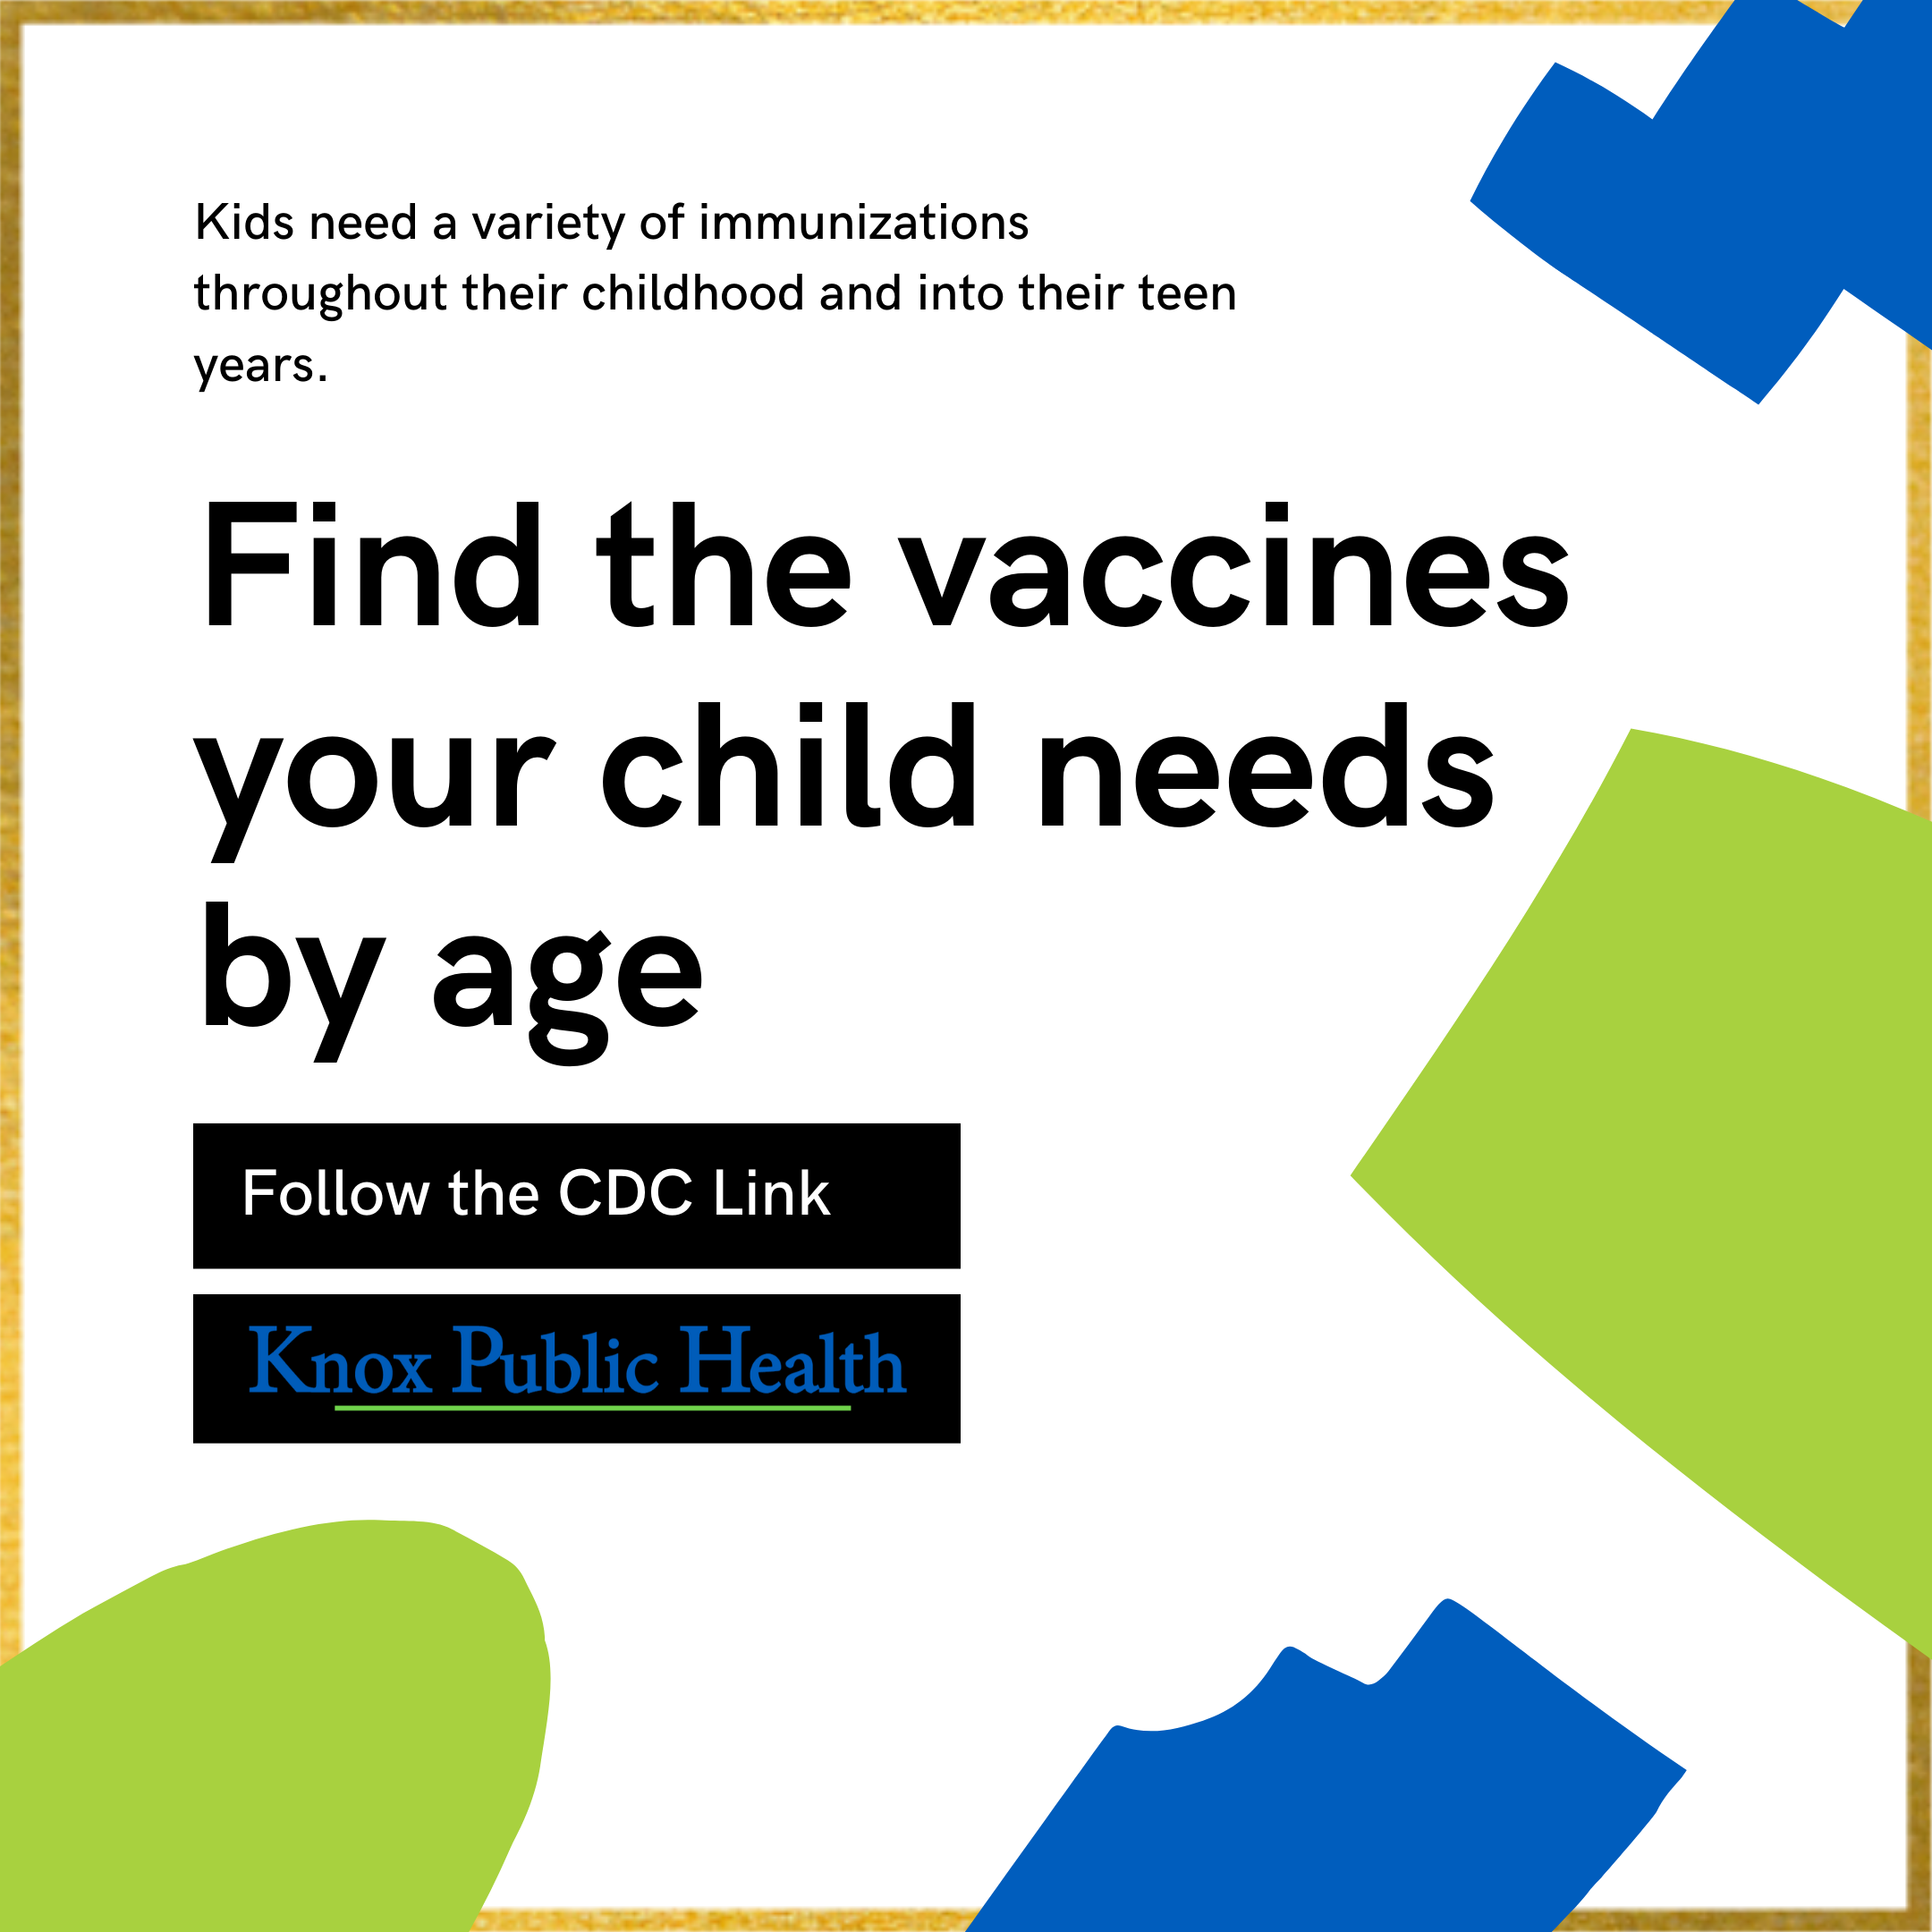 Kids need a variety of immunizations 07142020